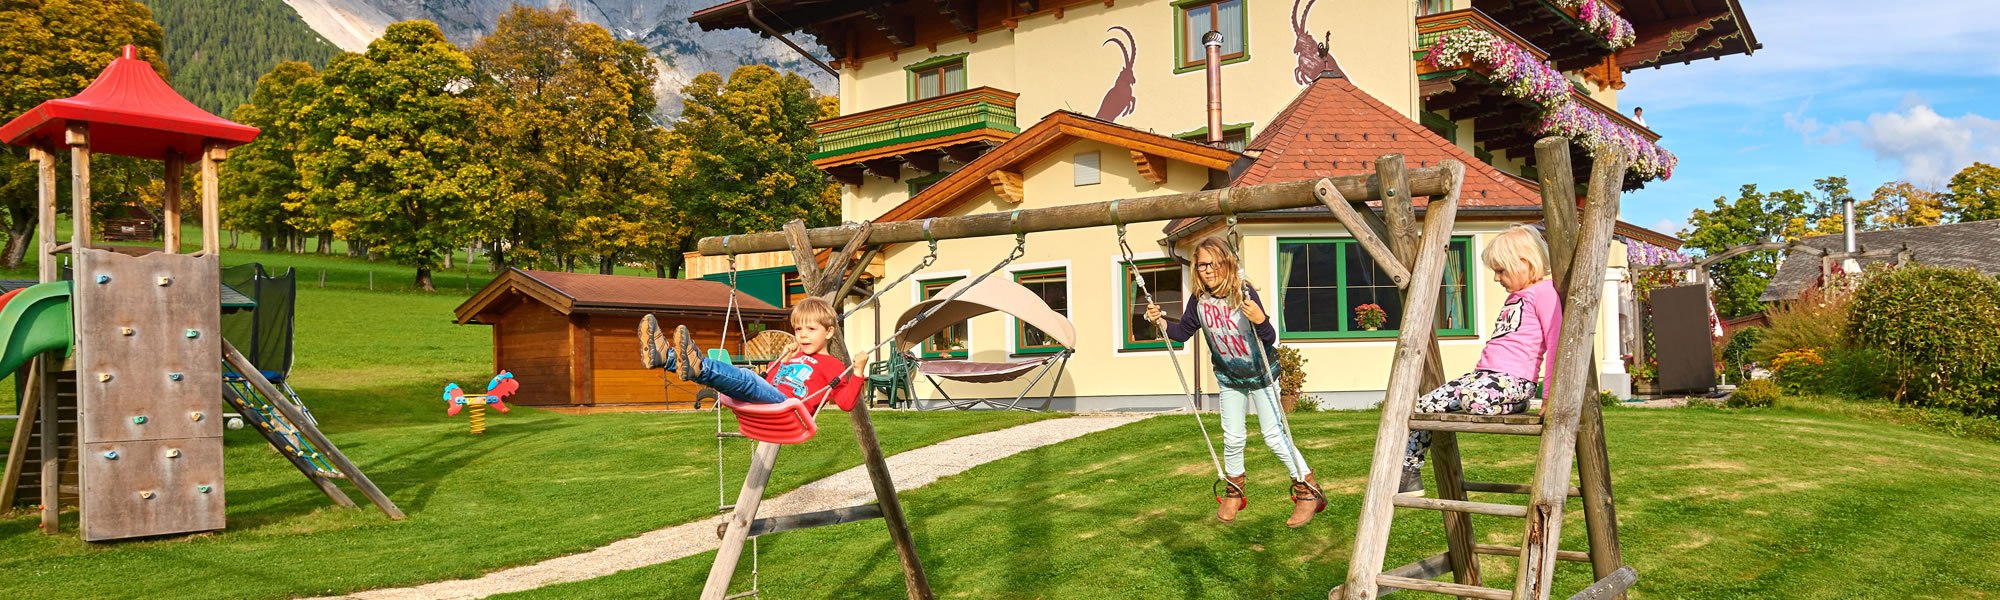 Familienurlaub im Hotel Jagdhof mit tollem Spielplatz